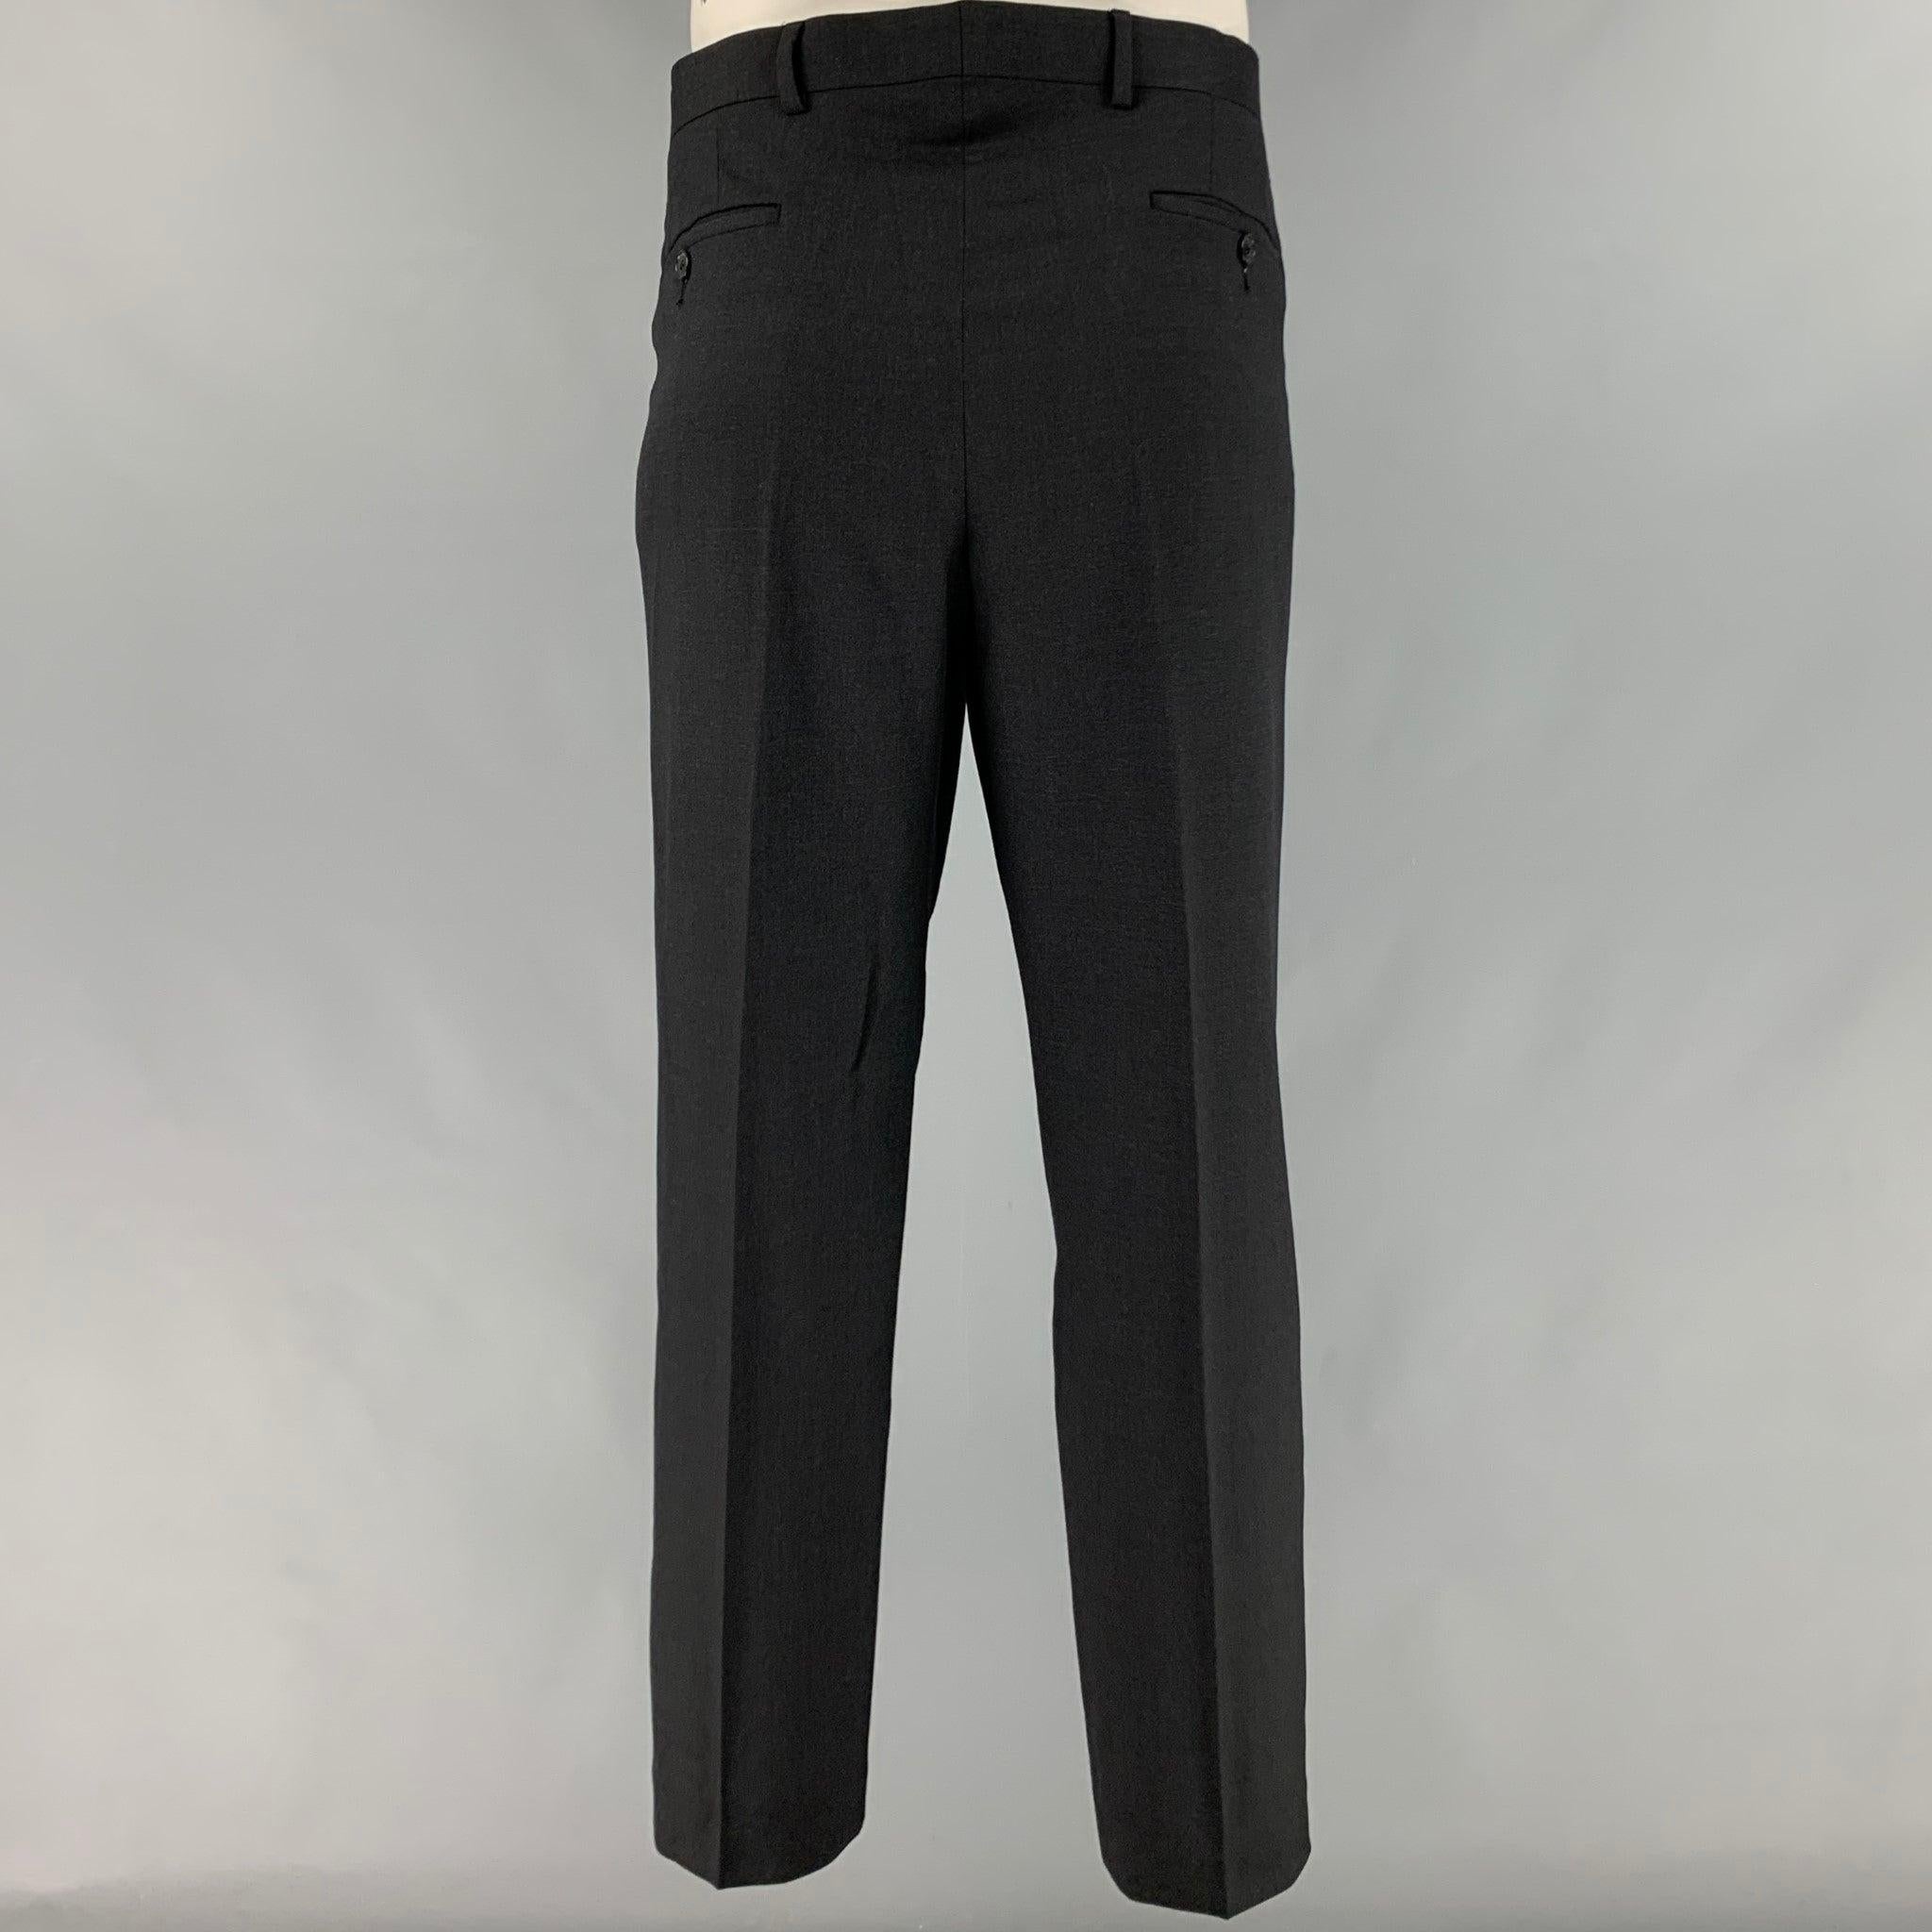 PAUL SMITH Size 42 Black Wool Notch Lapel Suit For Sale 1